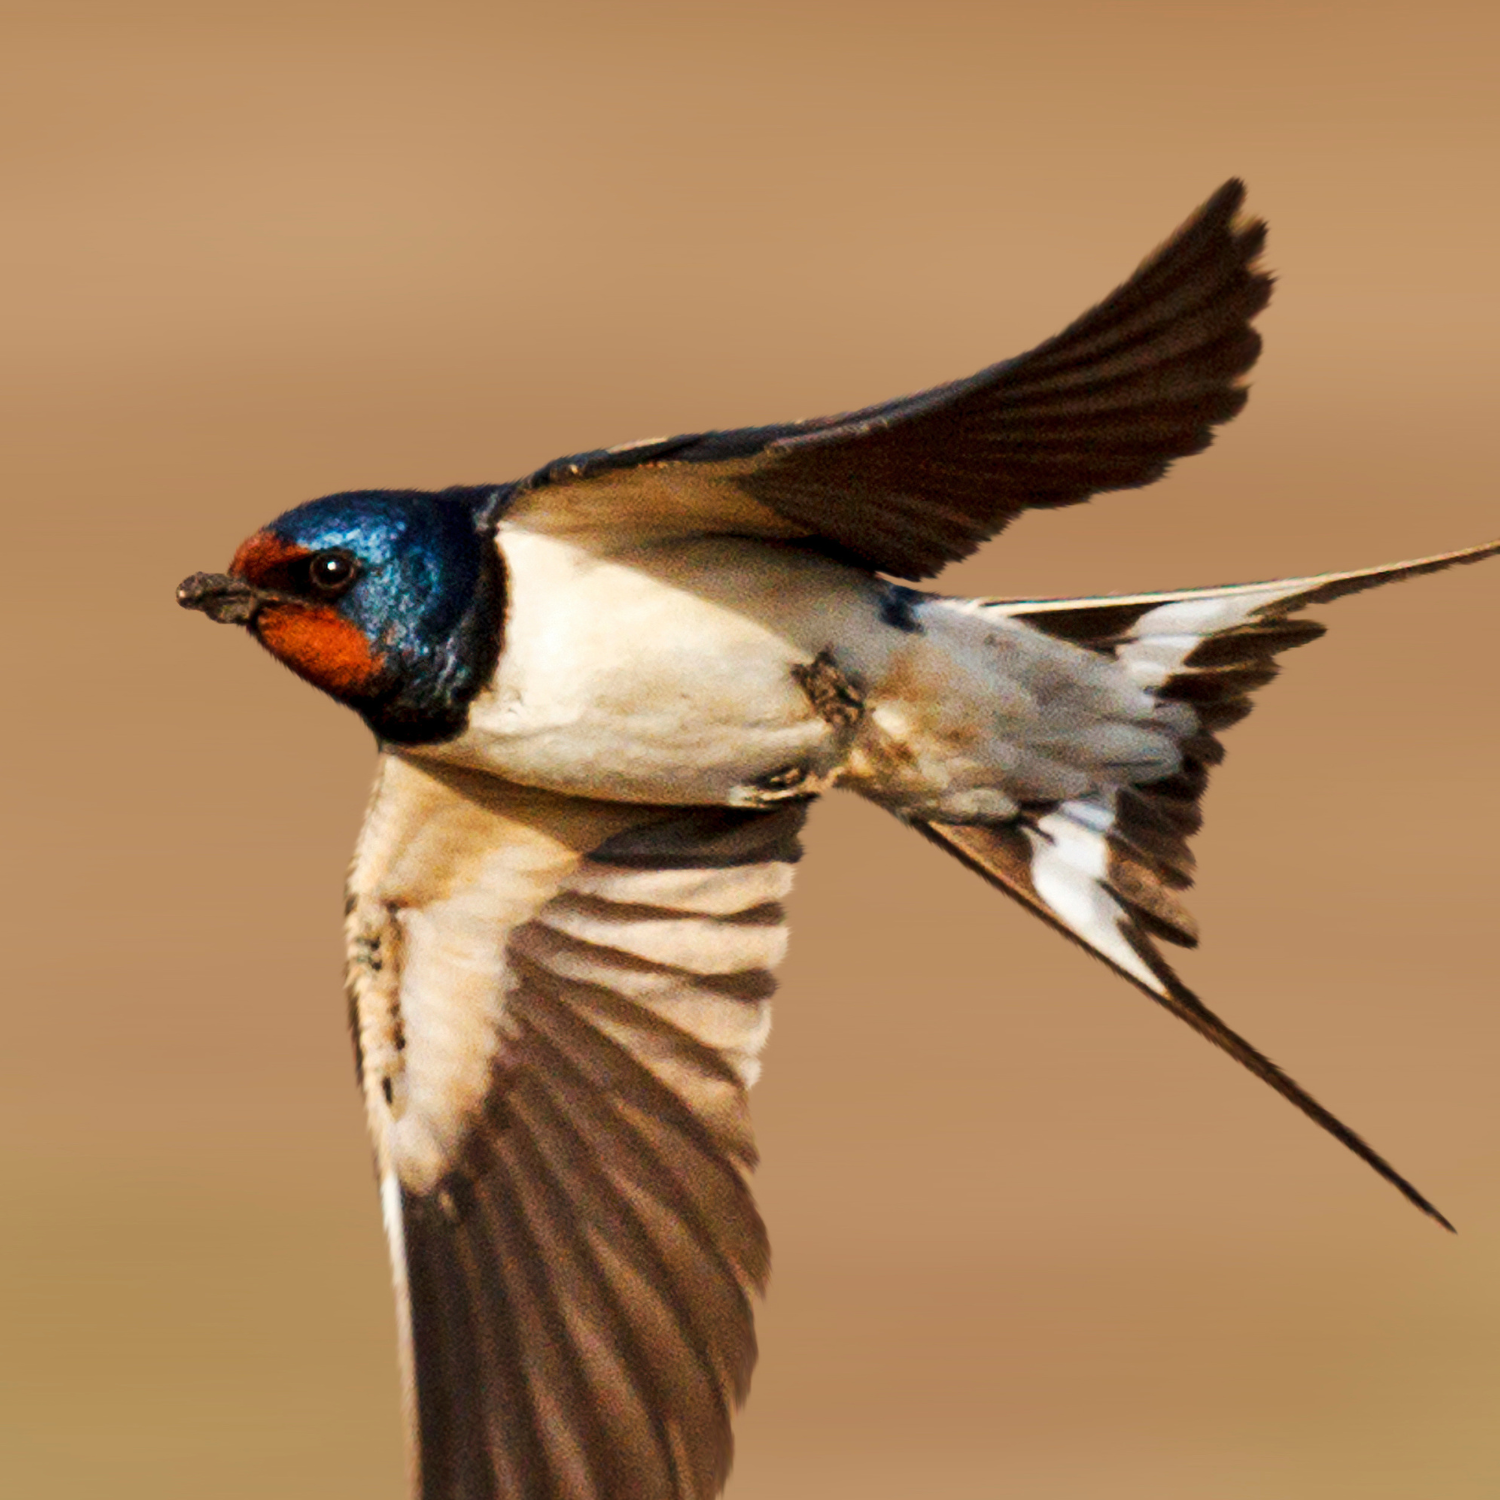 A barn swallow flys through the air